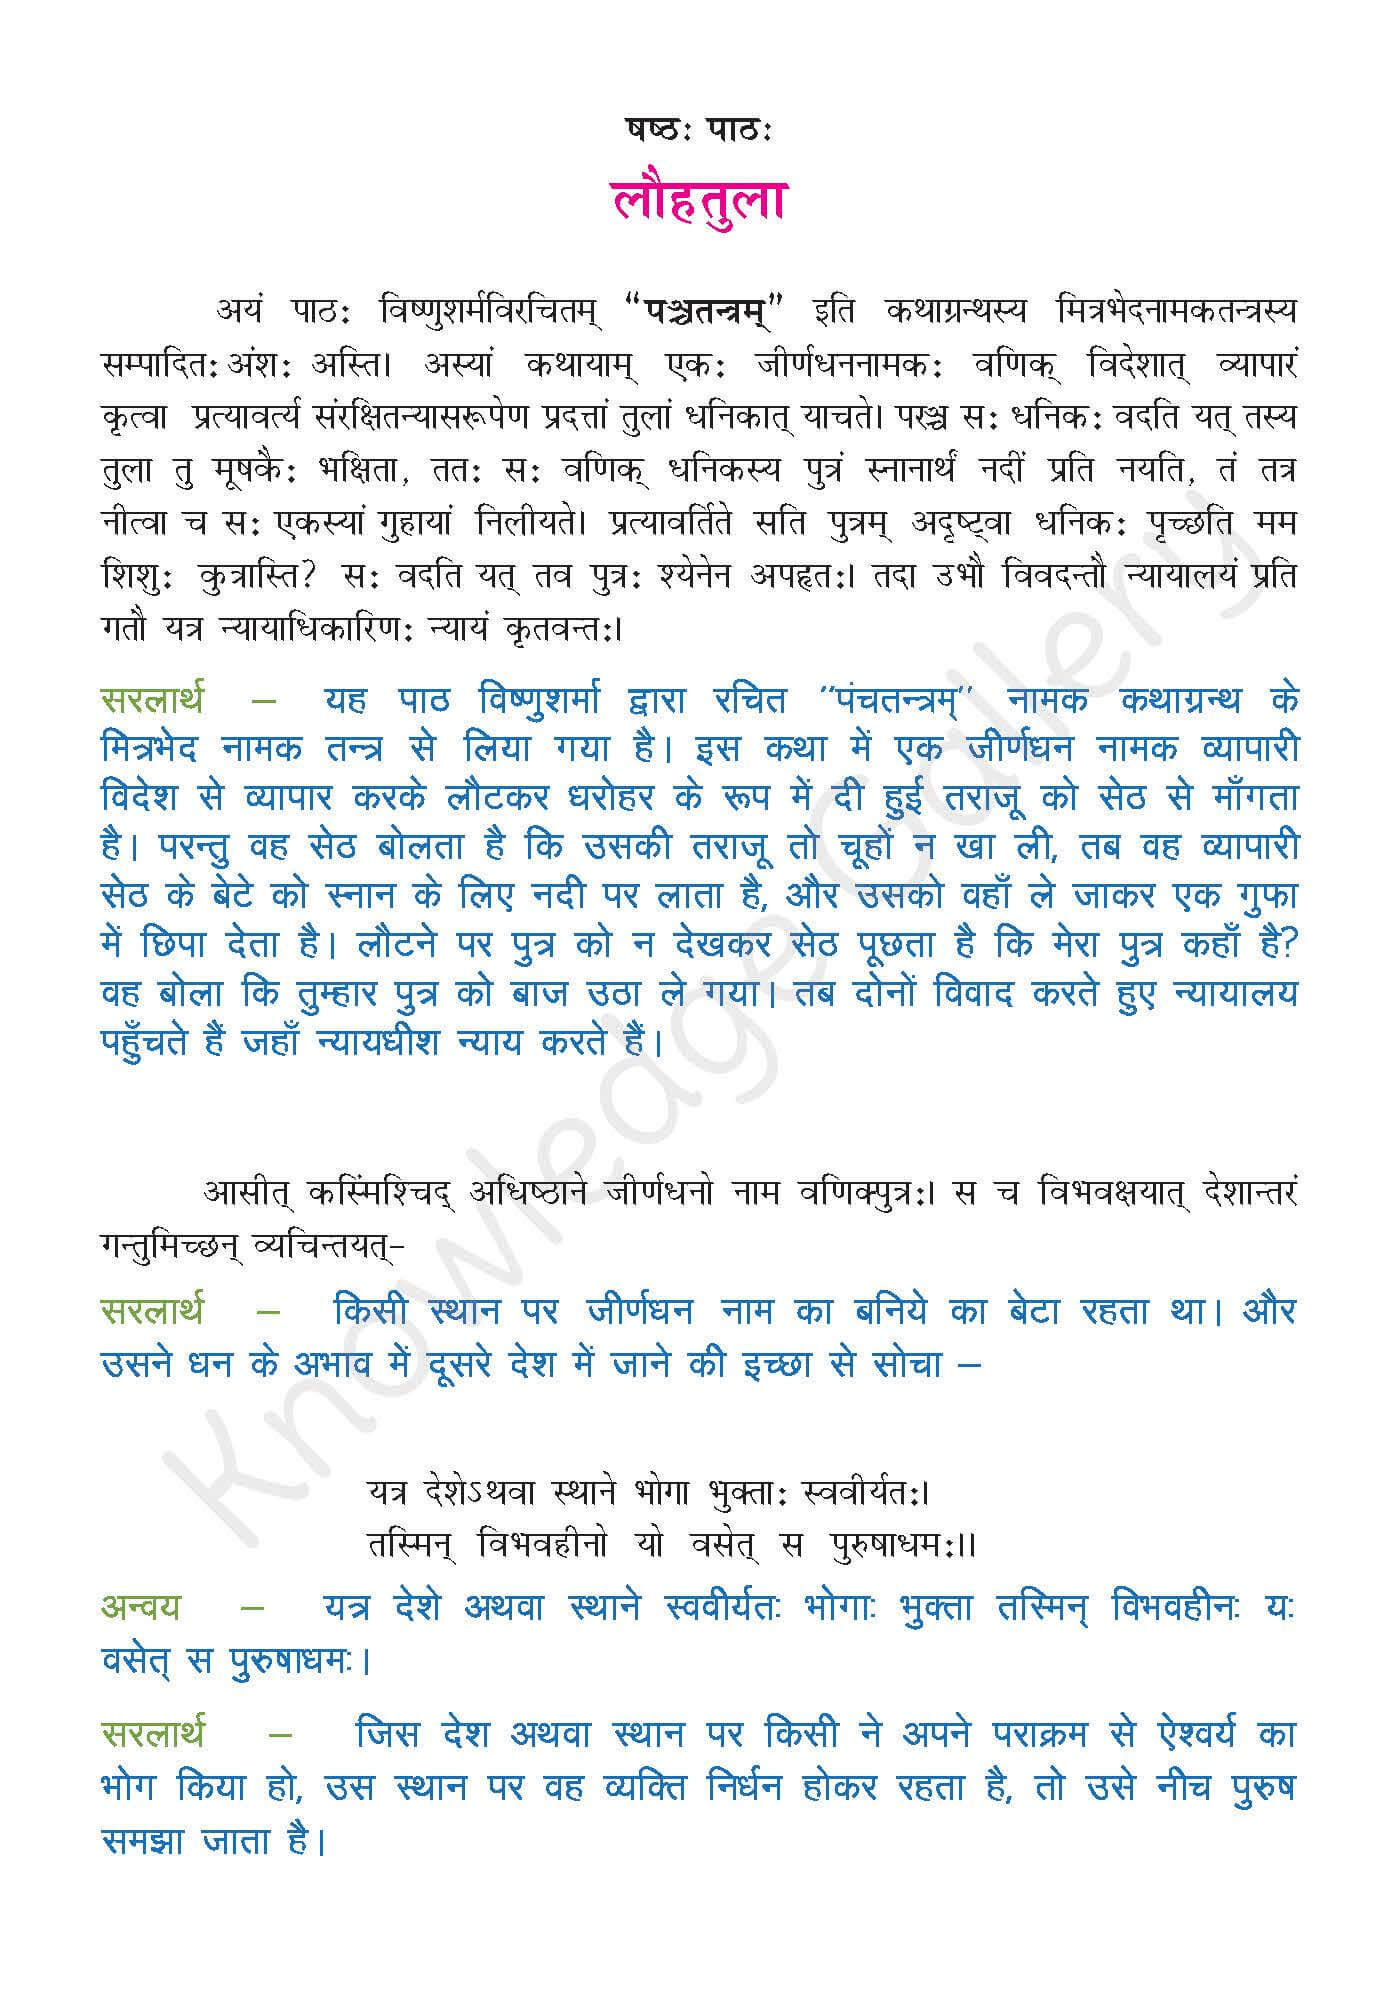 NCERT Solution For Class 9 Sanskrit Chapter 6 part 1